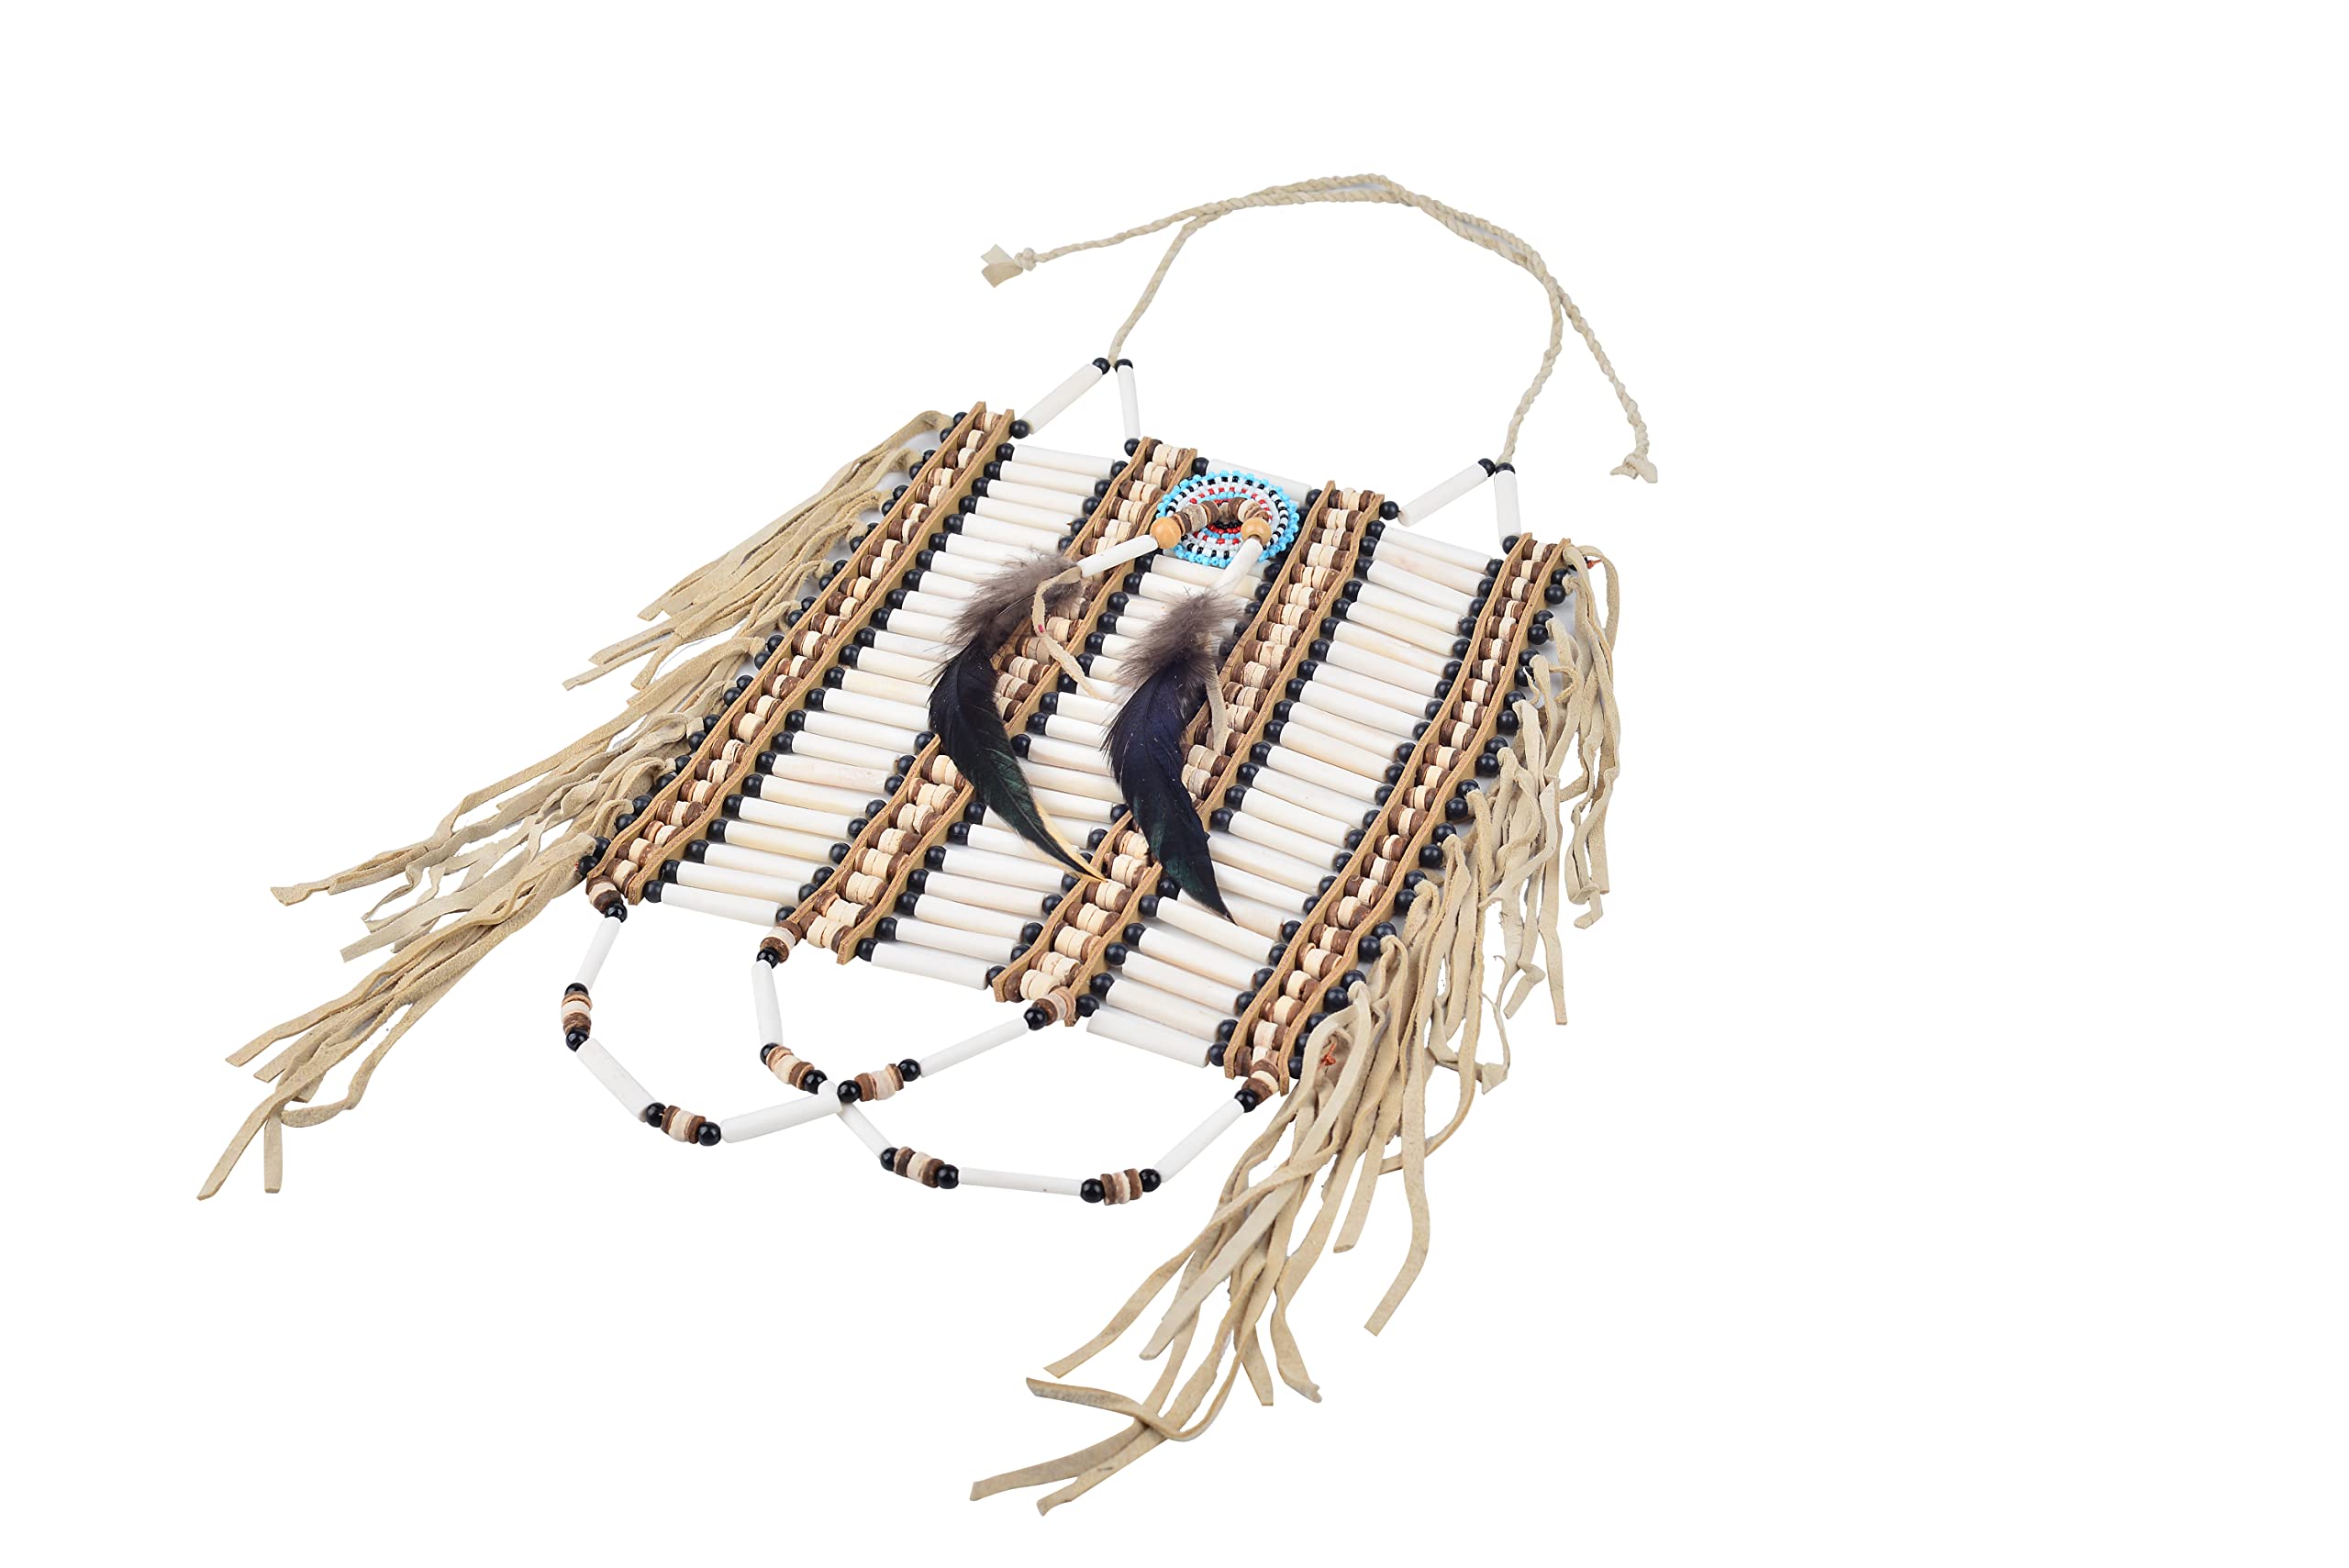 KARMABCN Brustpanzer im indischen Stil, hergestellt aus Knochen und braunem Wildleder, Knochenhalsband, indisch inspiriertes Halsband